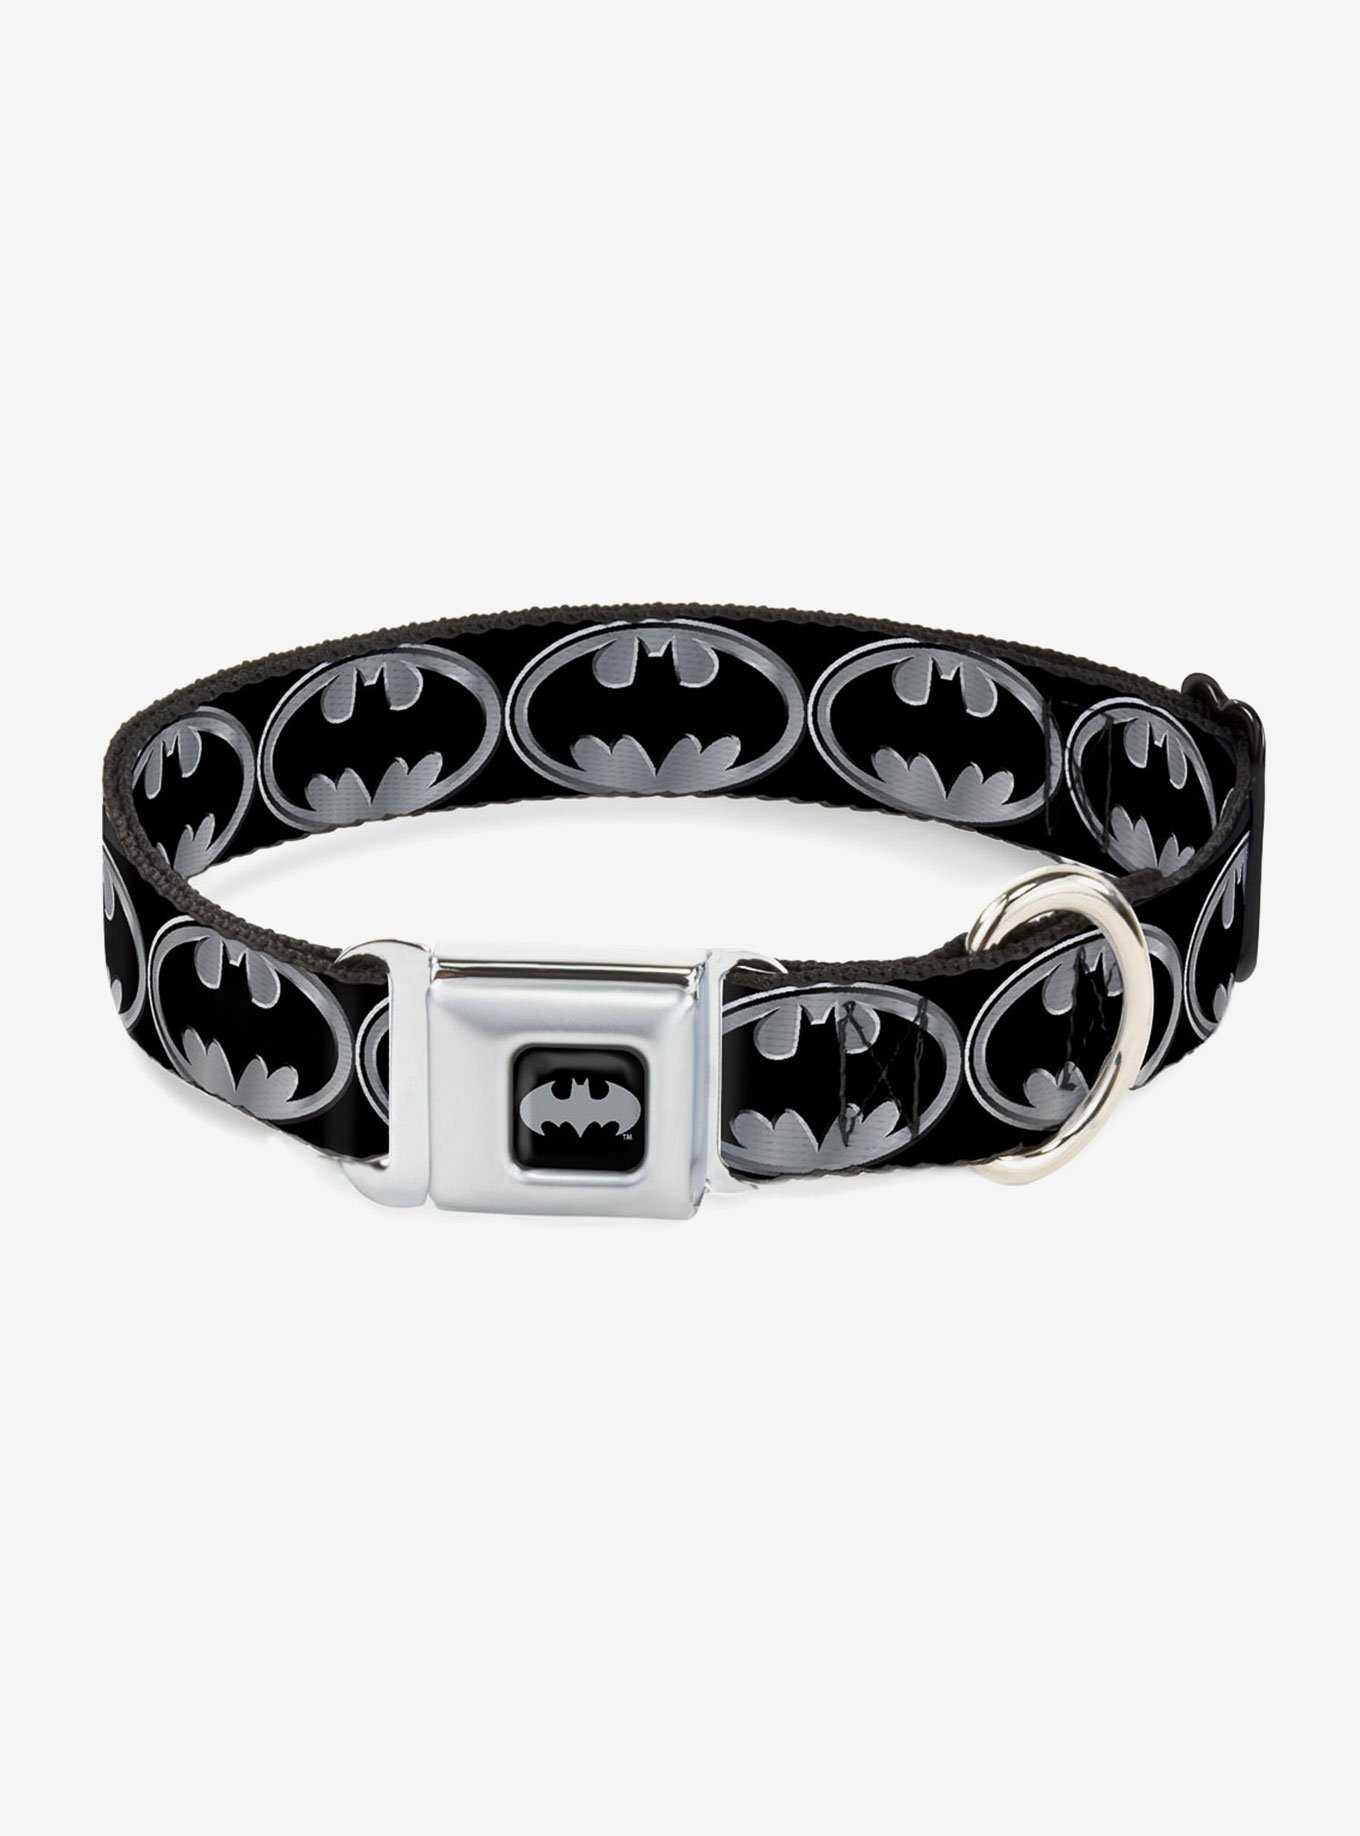 DC Comics Justice League Batman Shield Seatbelt Buckle Pet Collar, , hi-res